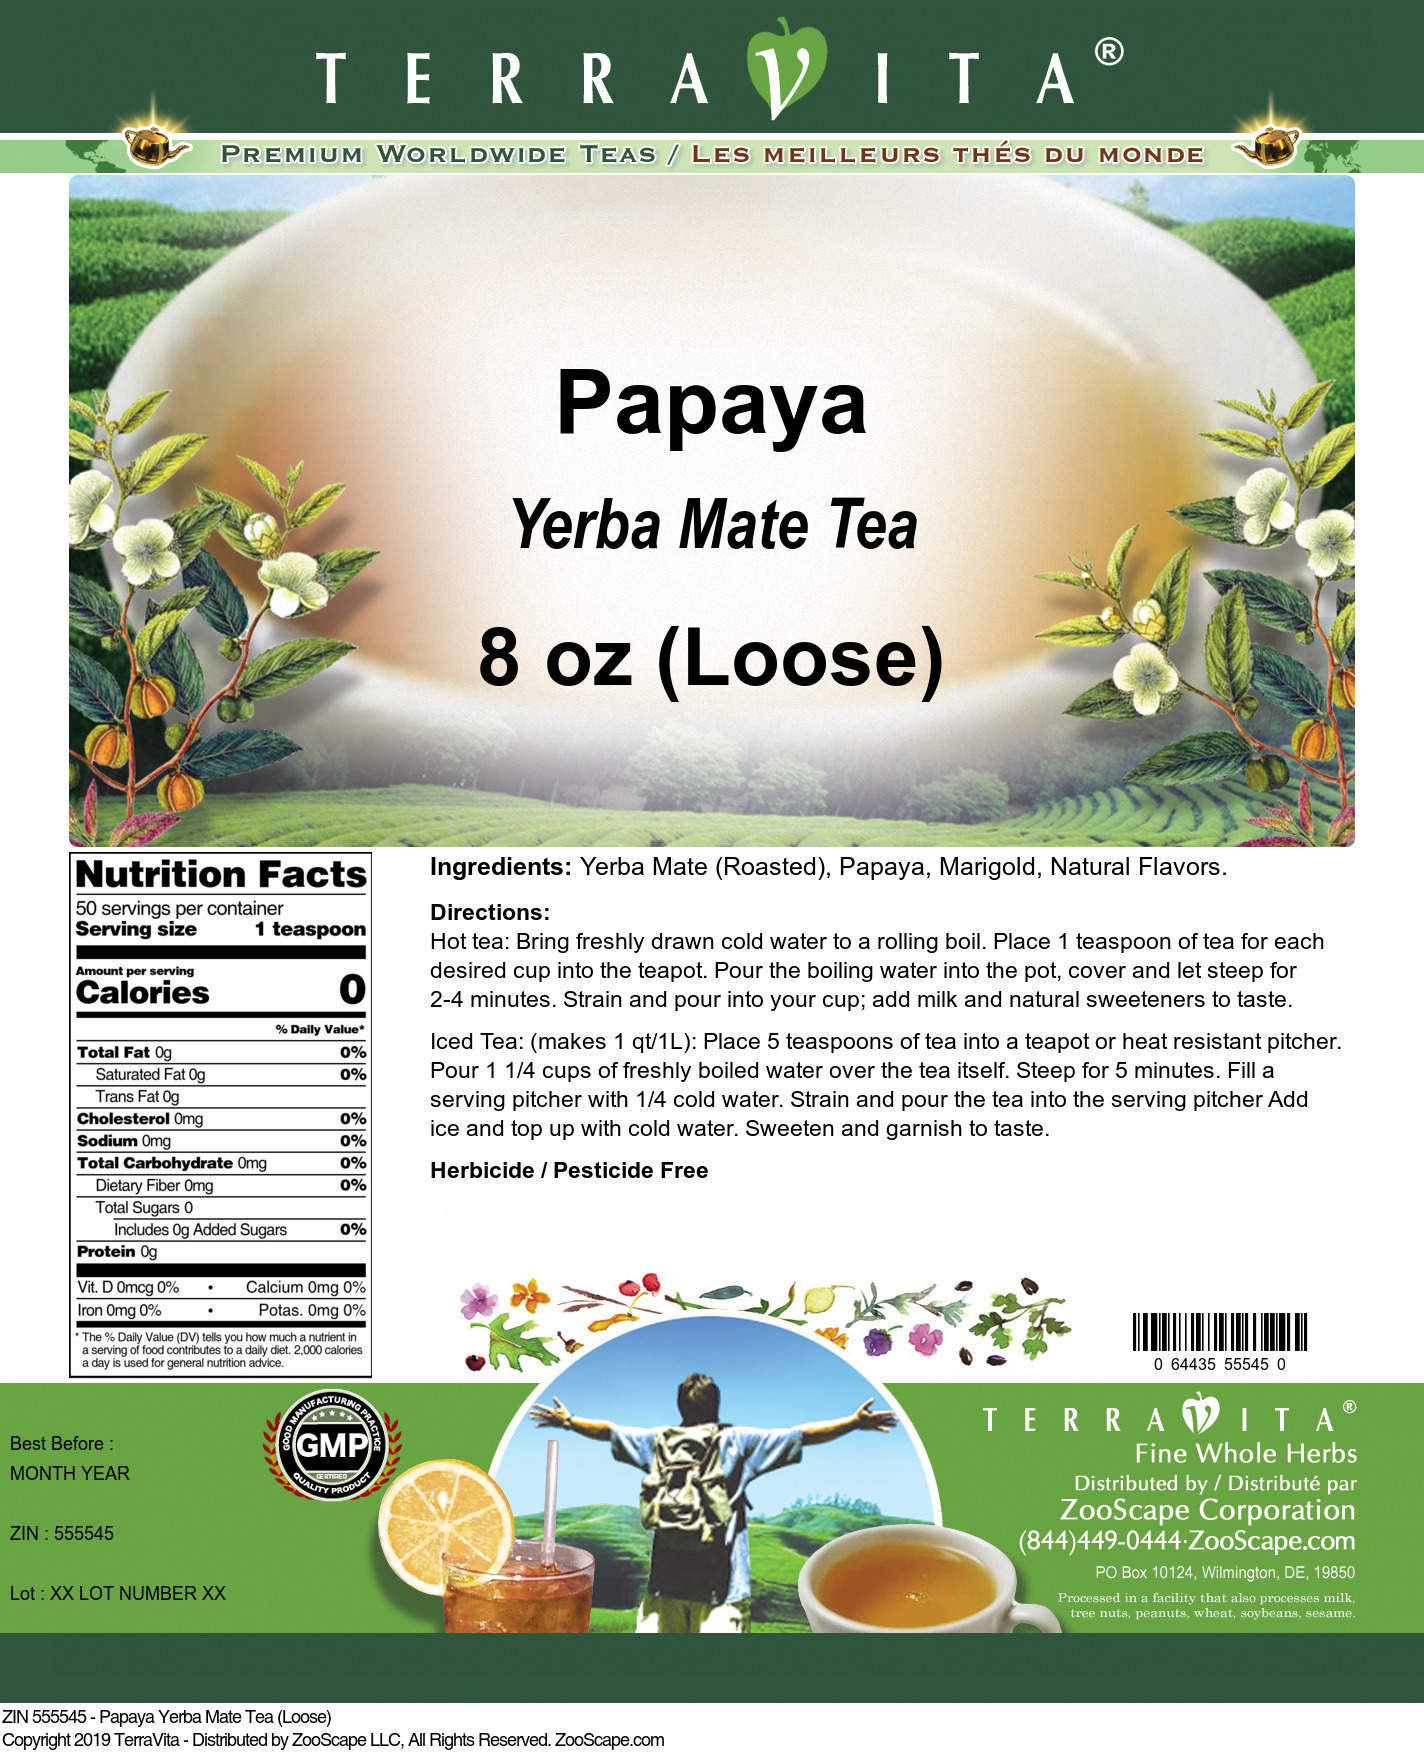 Papaya Yerba Mate Tea (Loose) - Label